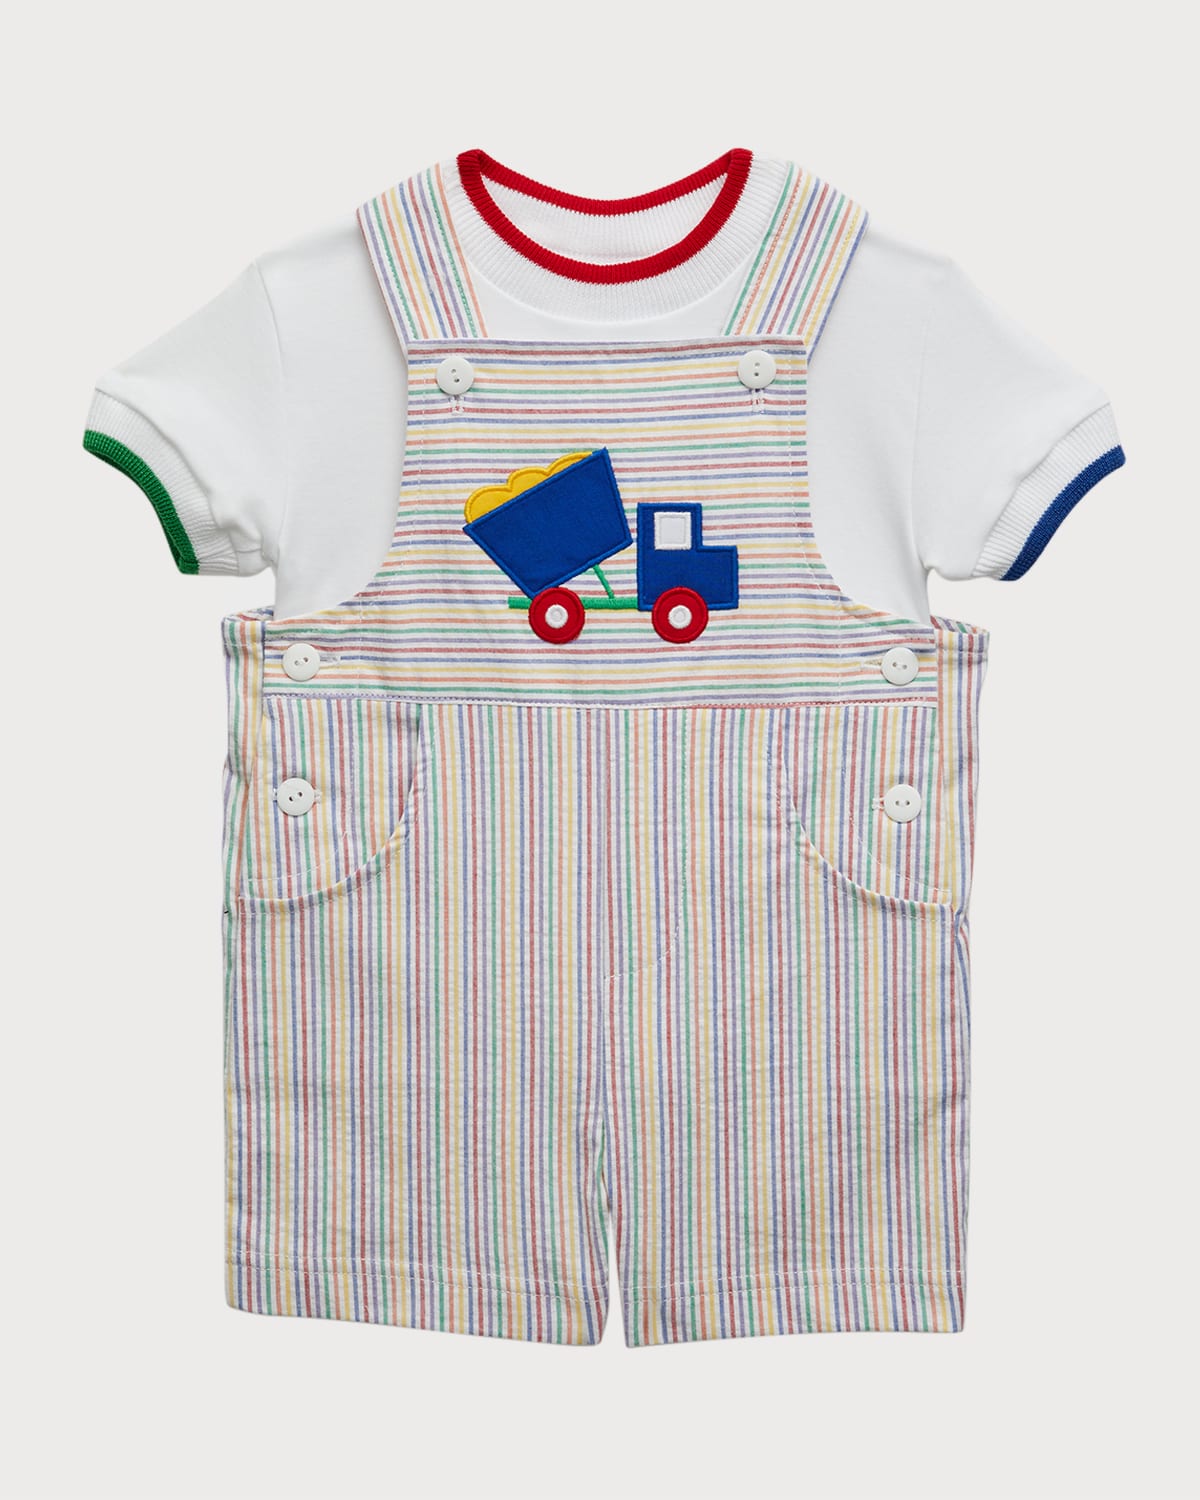 Boy's Embroidered Dumptruck Seersucker W/ T-Shirt, Size 6M-24M